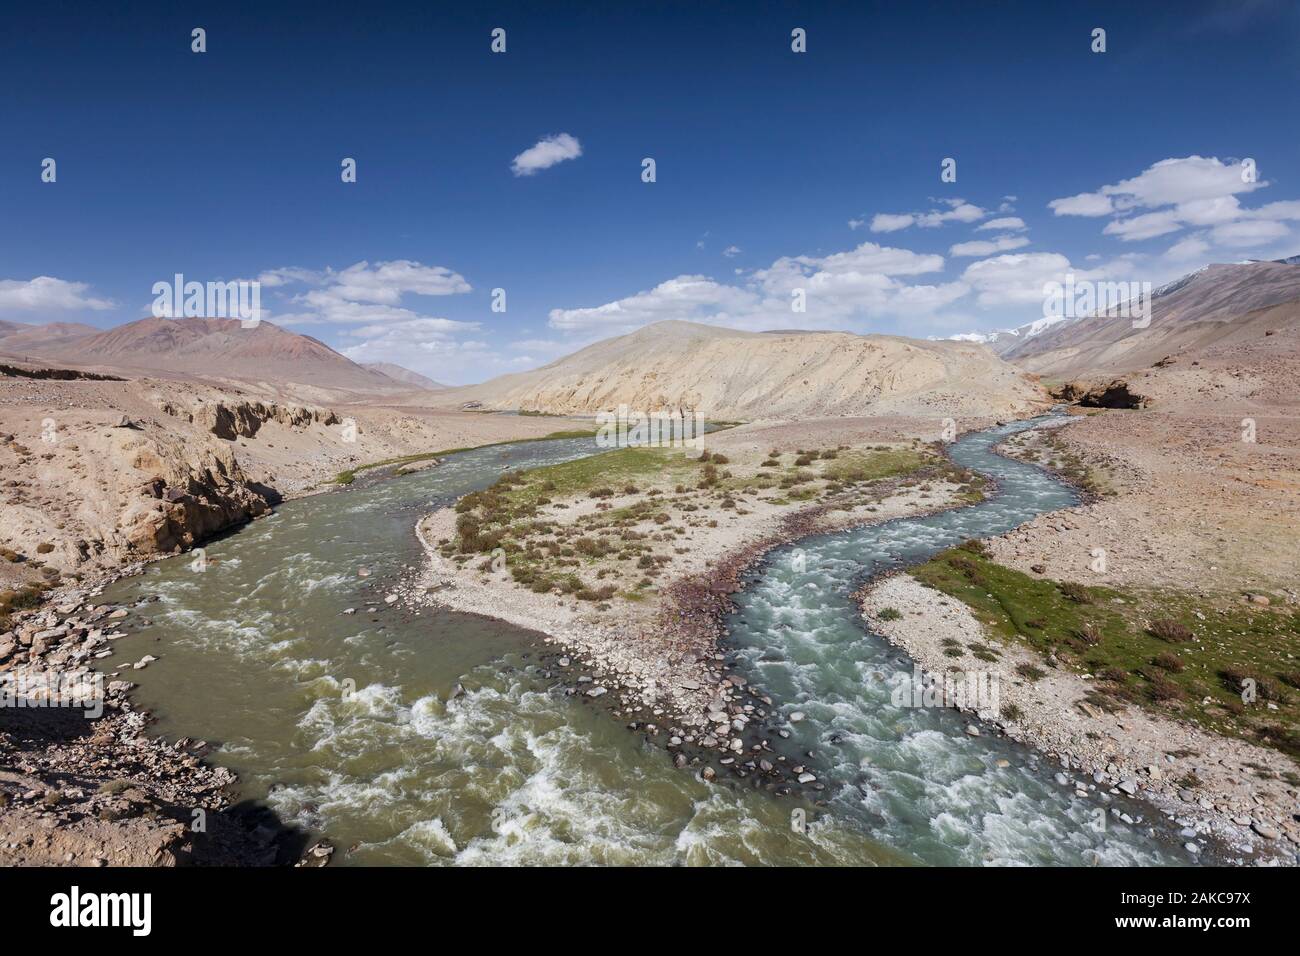 Tadschikistan, Gorno-Badakhshan Autonome Region, Pamir Highway, dürren Berge und Pamir Fluss Tadschikistan Trennung von Afghanistan, von der tadschikischen Seite gesehen, Höhe 3600 m Stockfoto